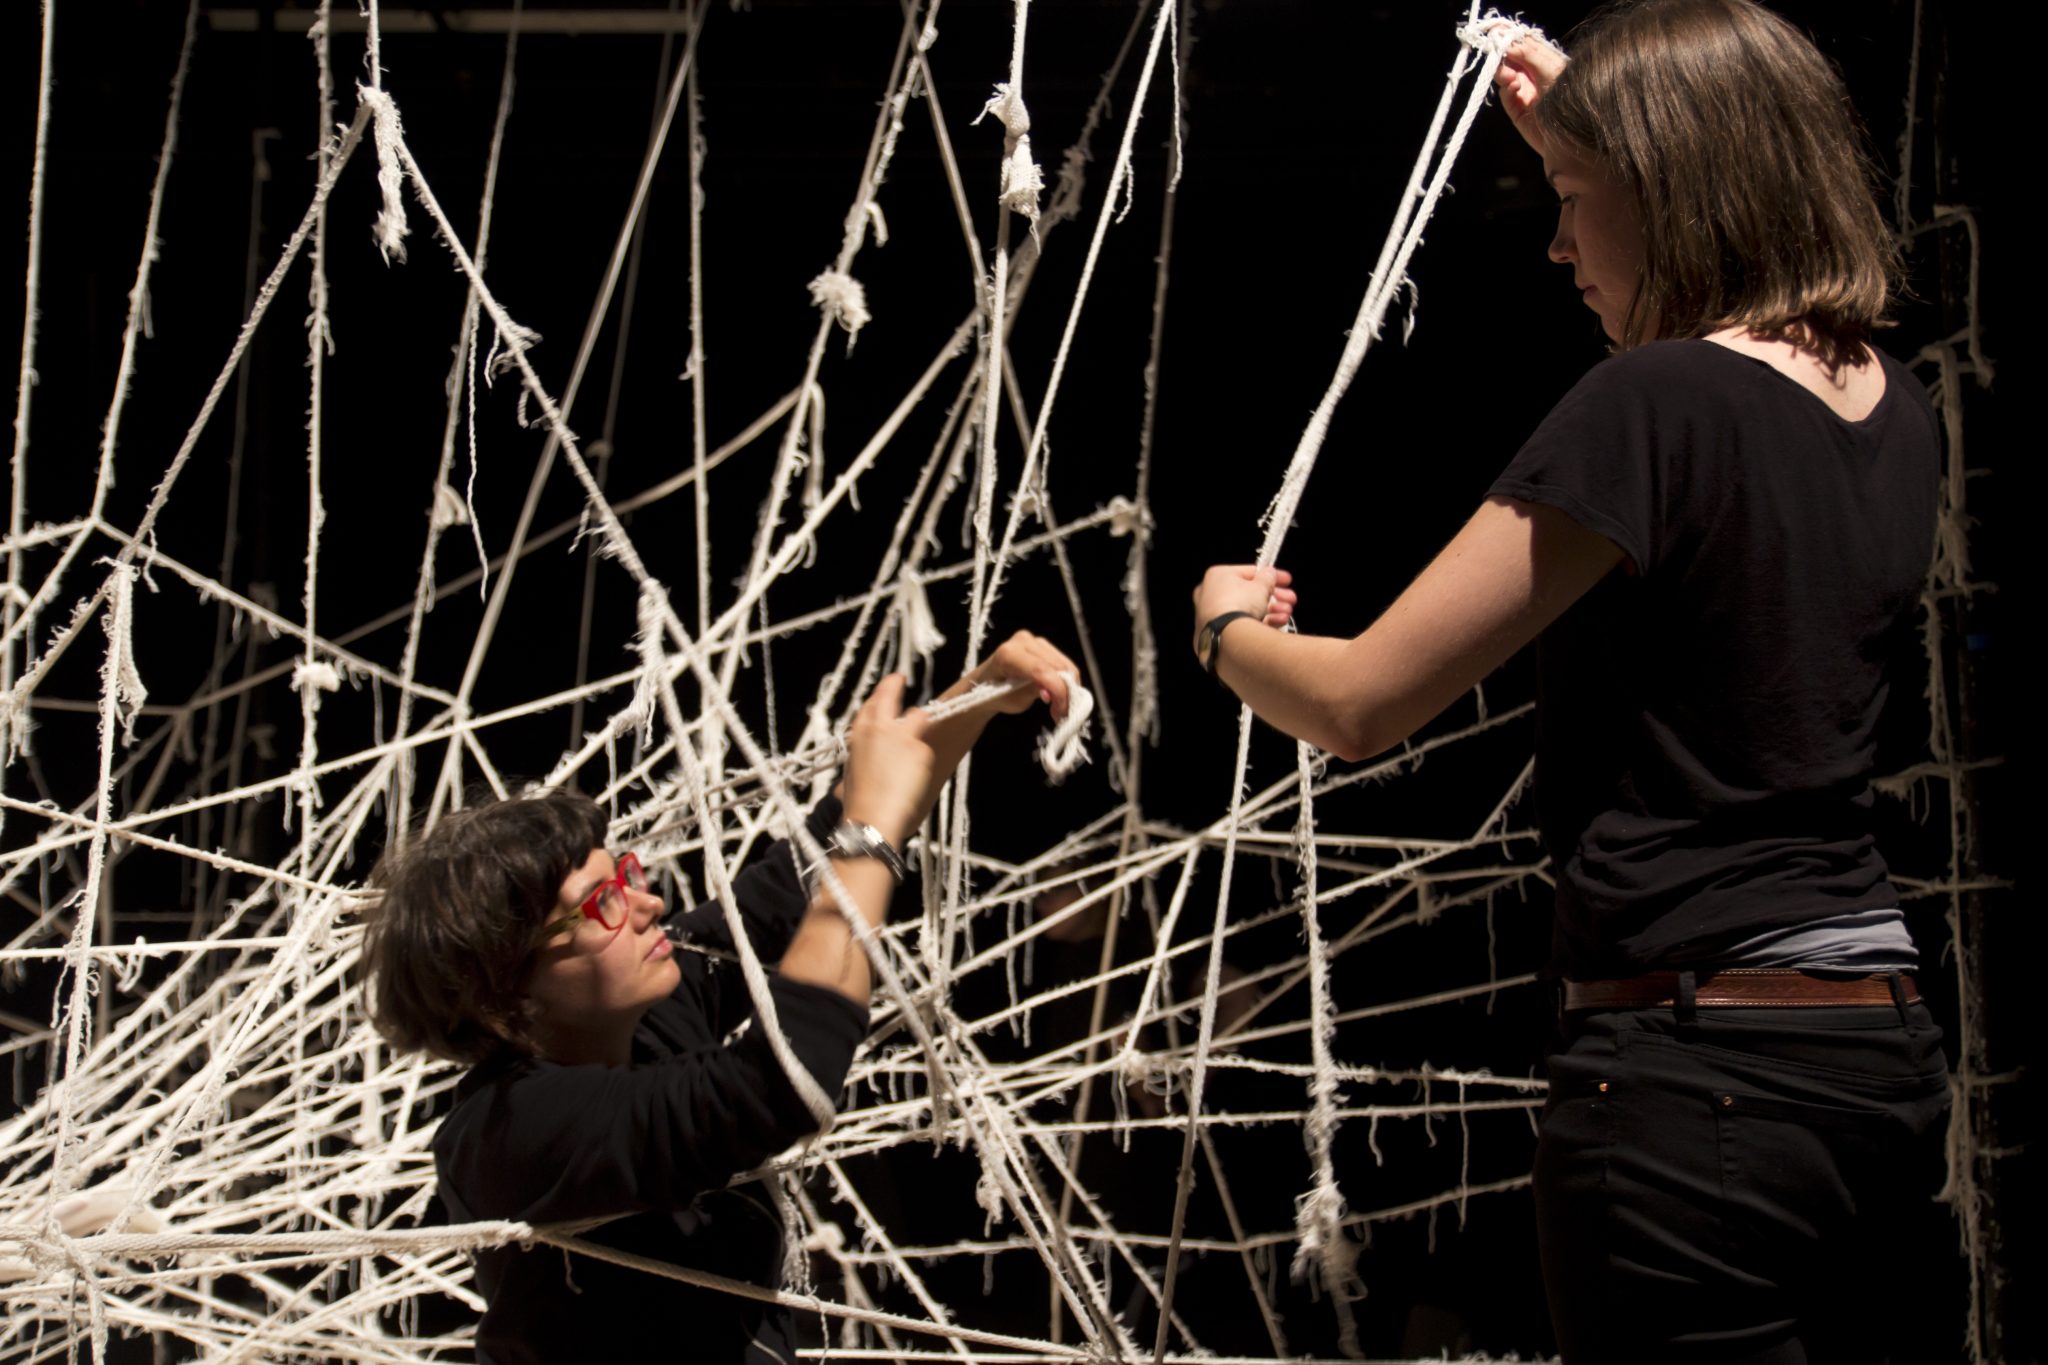 Záber z inscenácie Strung na Royal Central School of Speech and Drama v Londýne (2013), pre ktorú Tanja Beer vytvorila scénu z recyklovaného materiálu. Foto: Alex Blake.